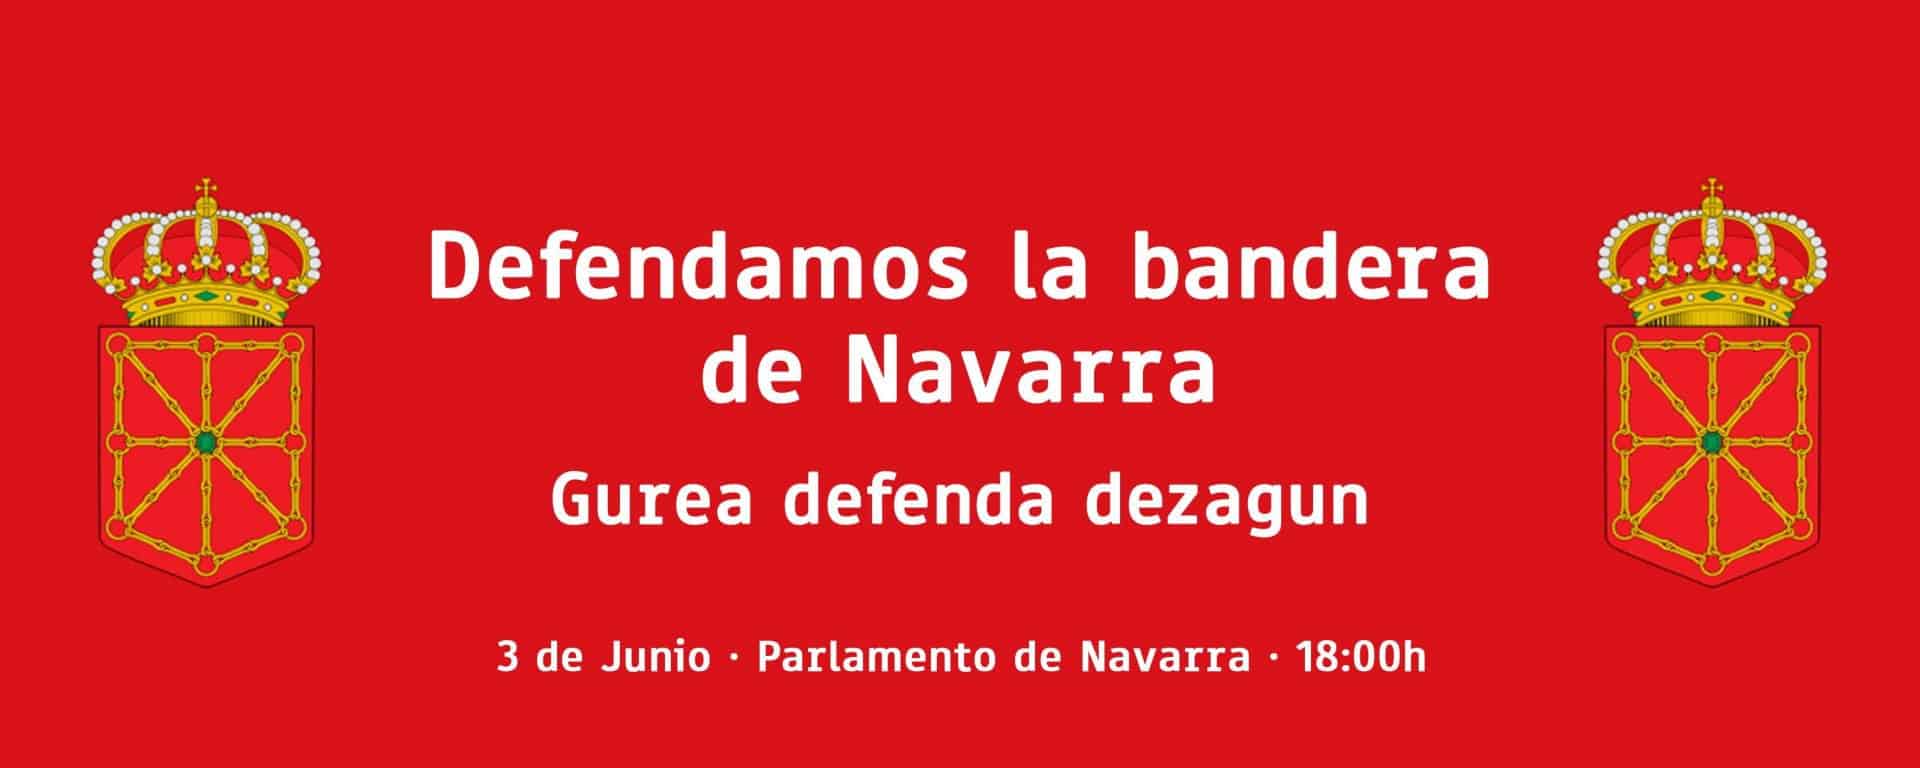 Clave: La miopía de este gobierno - Navarra Confidencial